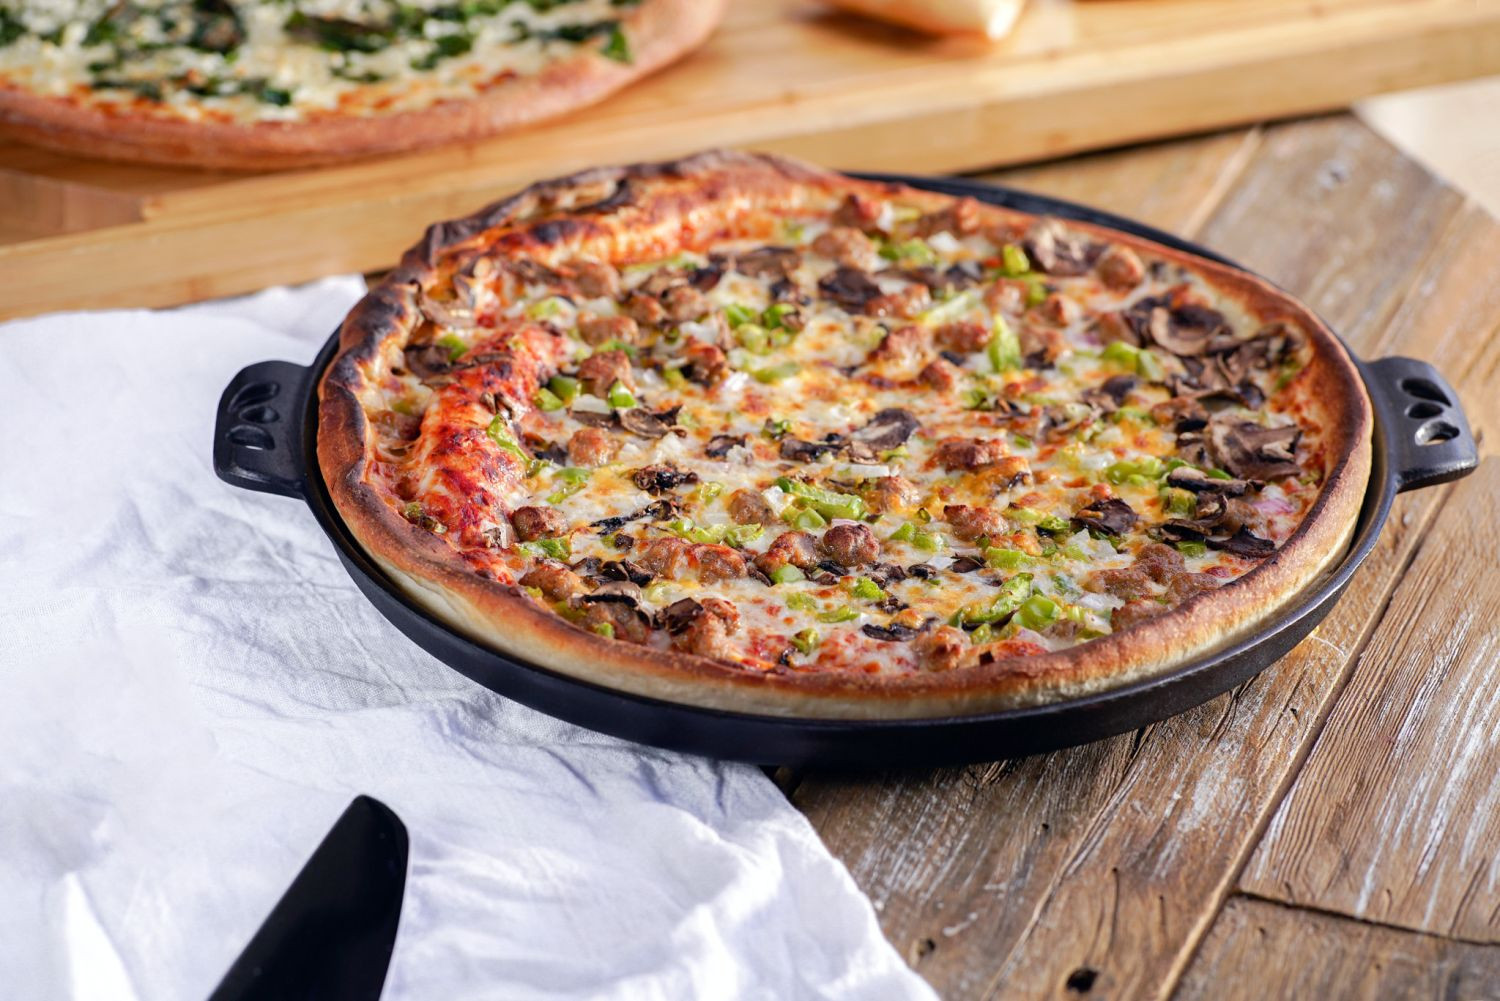 Pizza Pfanne Backform 36cm Camp Chef hervorragende Backeigenschaften durch das Material Gusseisen